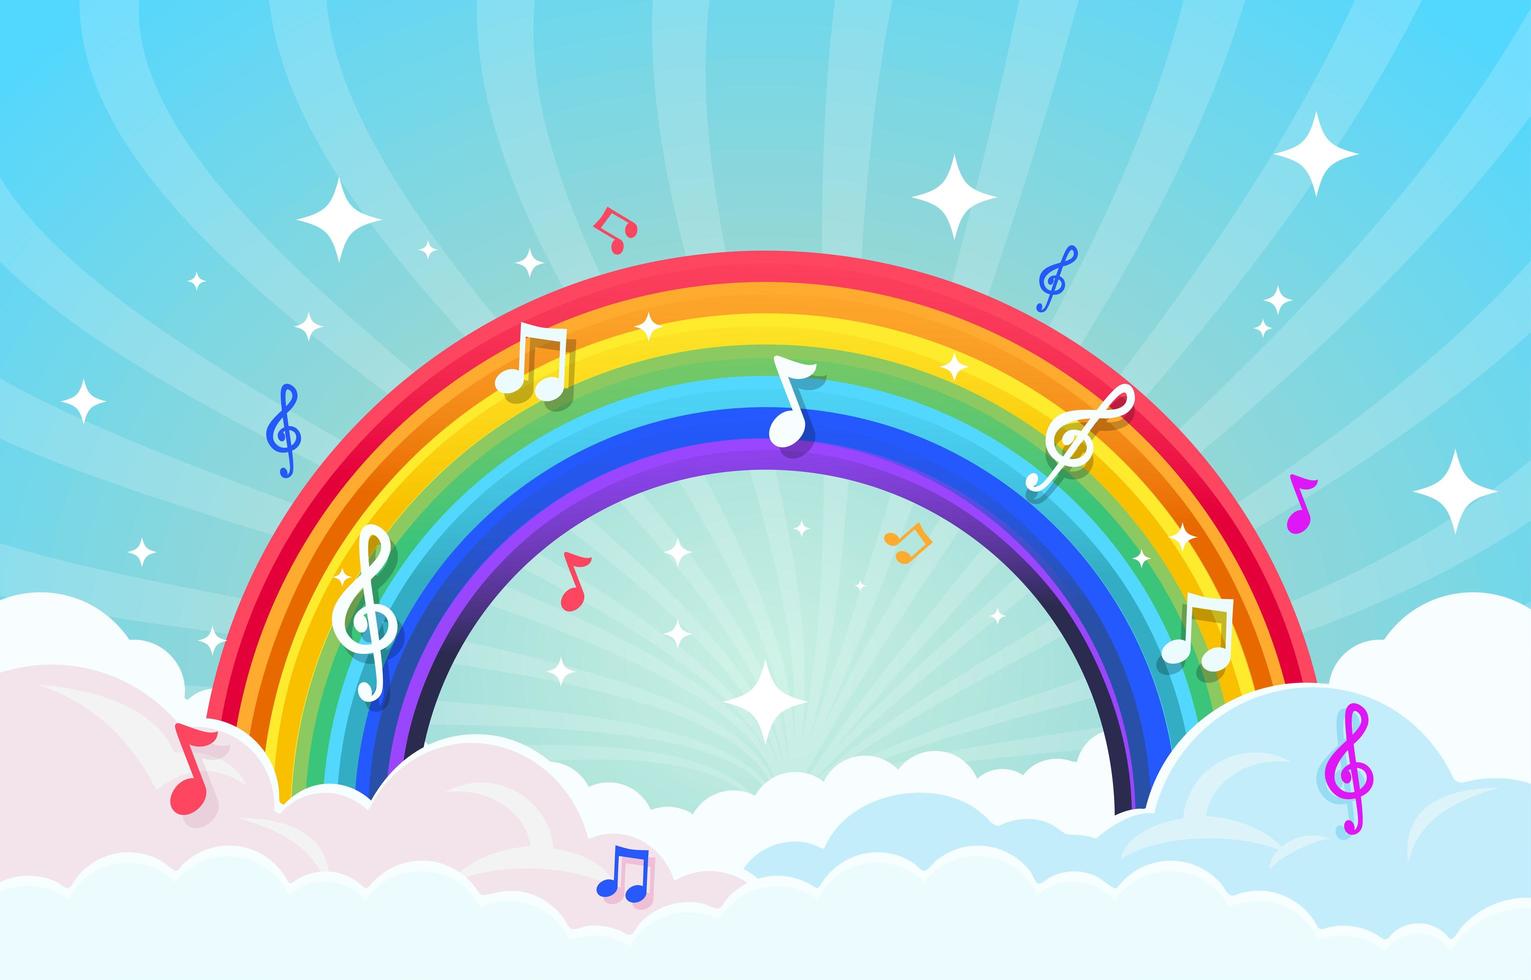 notas musicales alrededor del arcoiris. vector